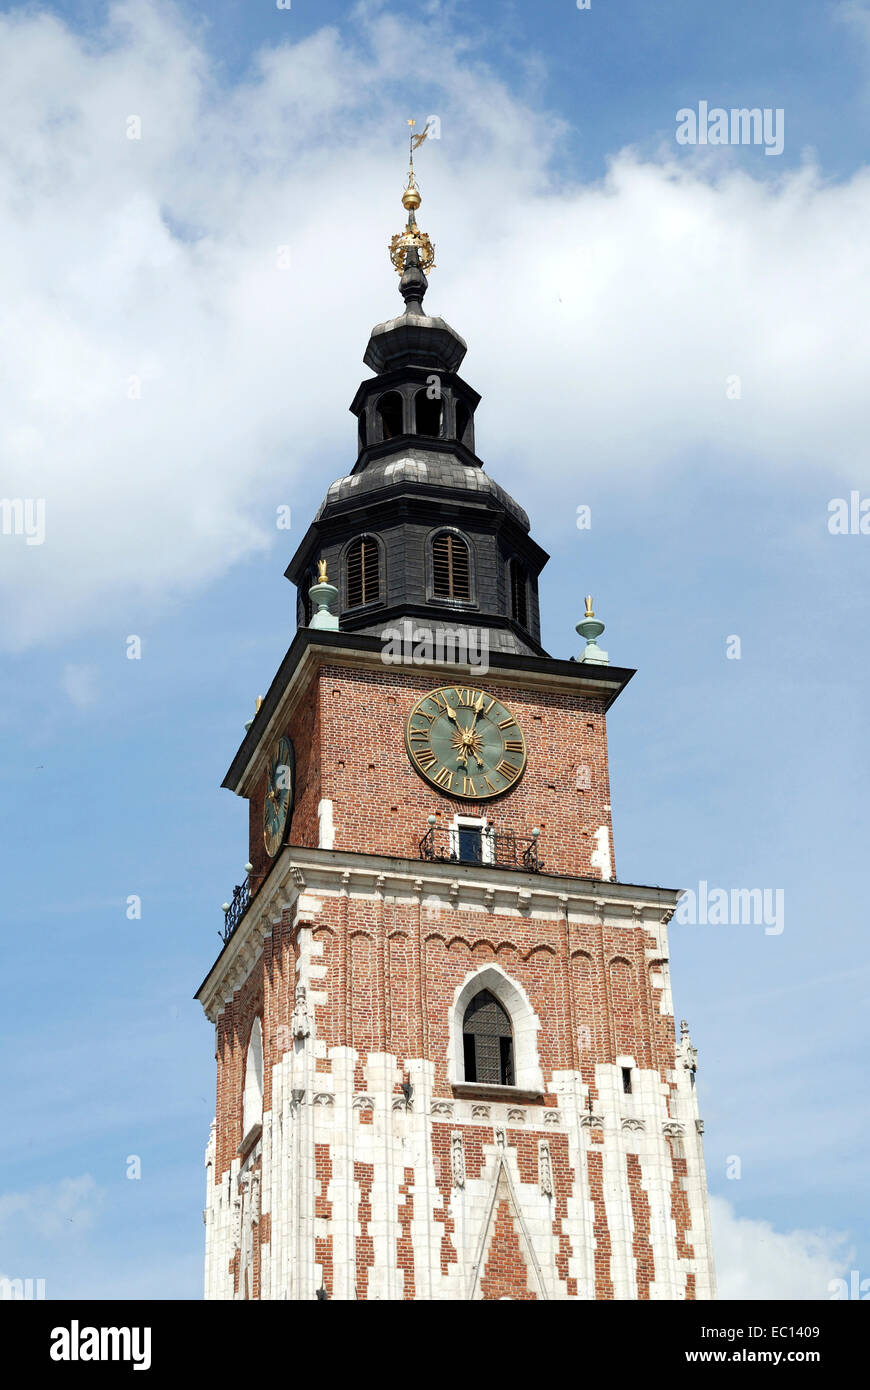 Rathausturm auf dem Marktplatz in Krakau in Polen. Stockfoto